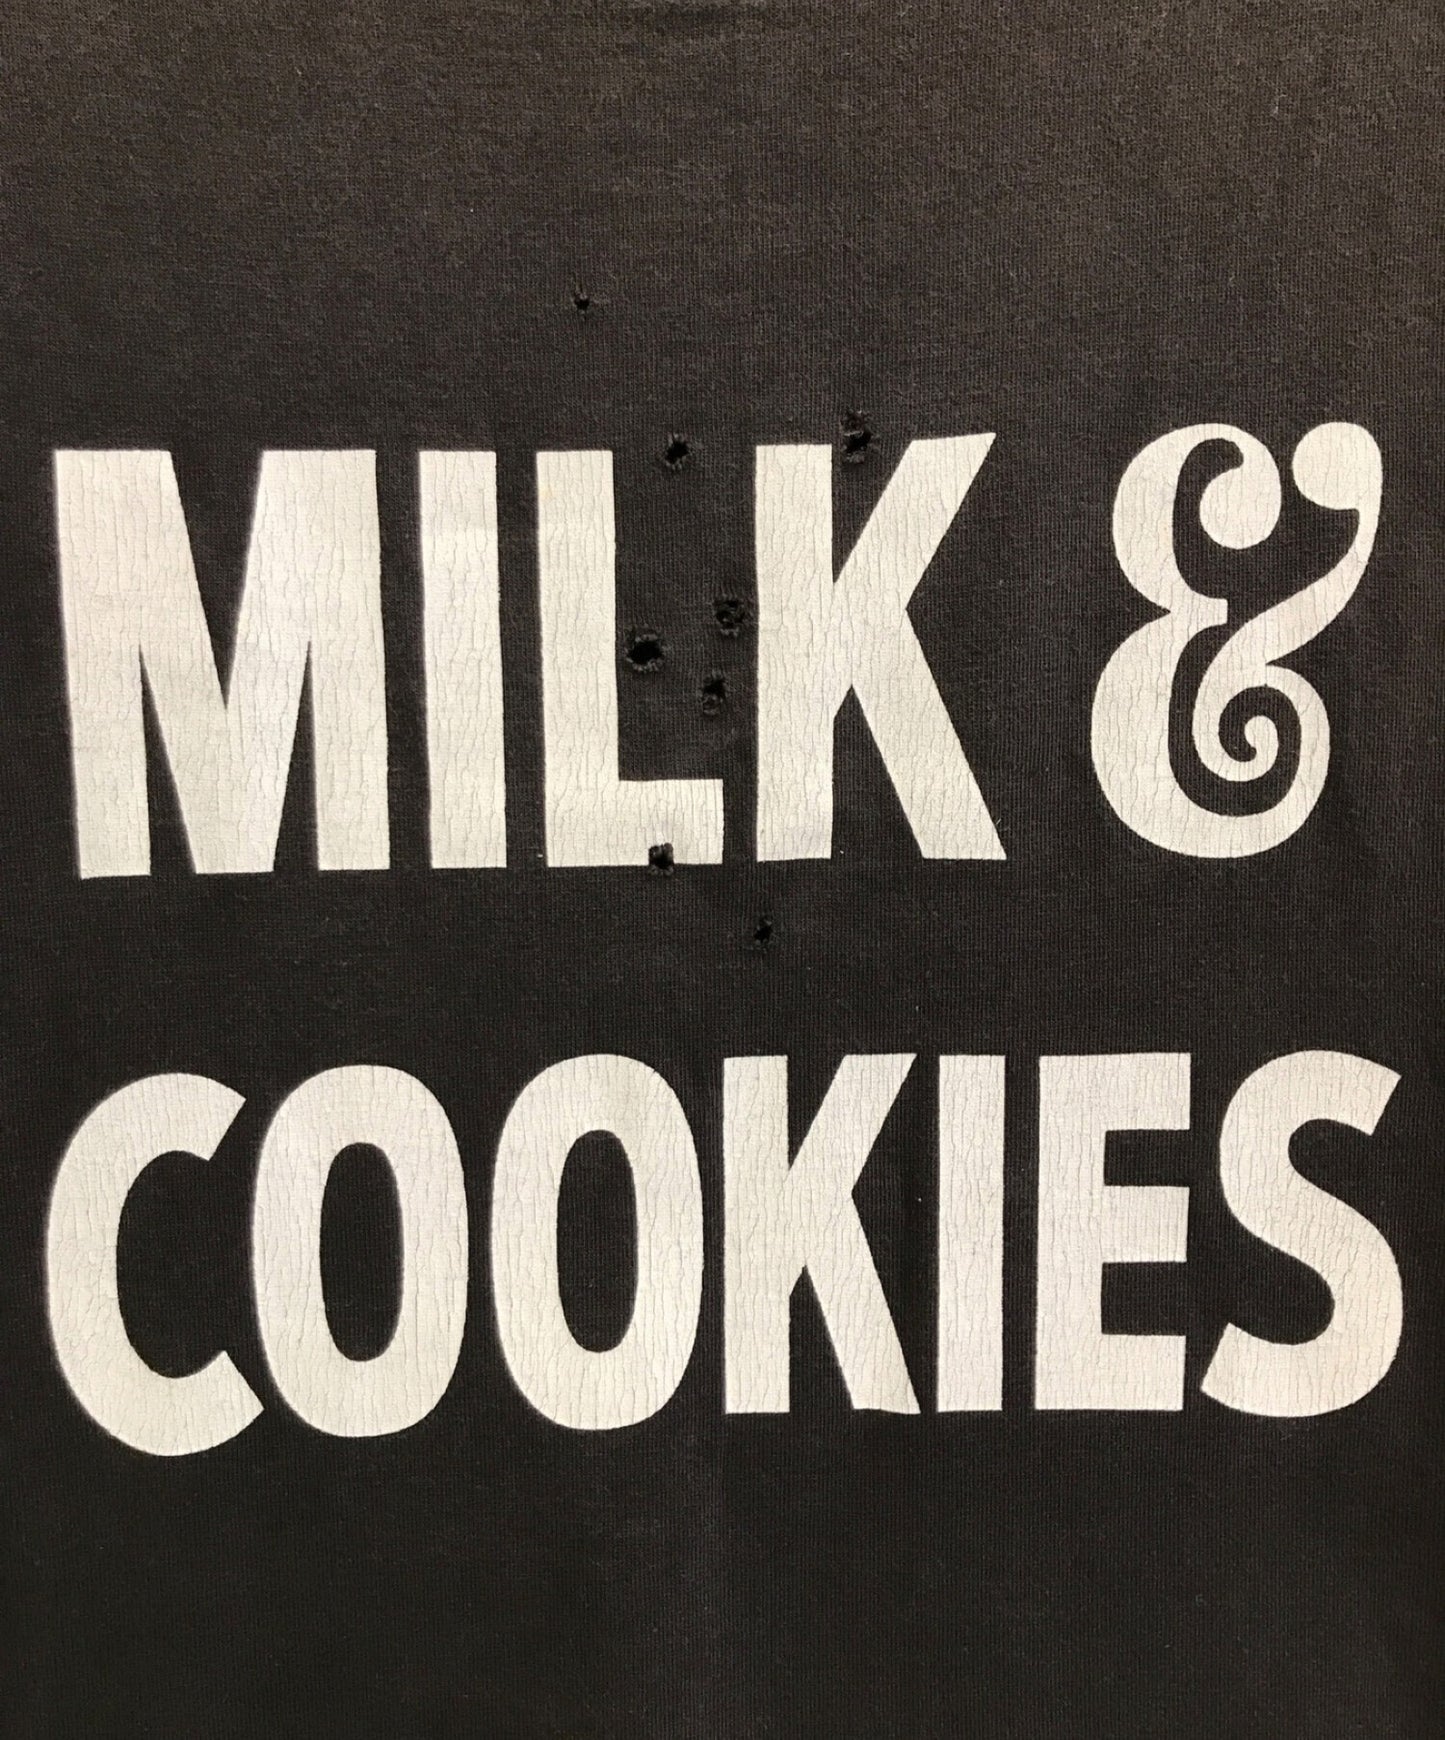 号码（n）ine牛奶和饼干T恤 /印刷T恤 /损坏的T恤